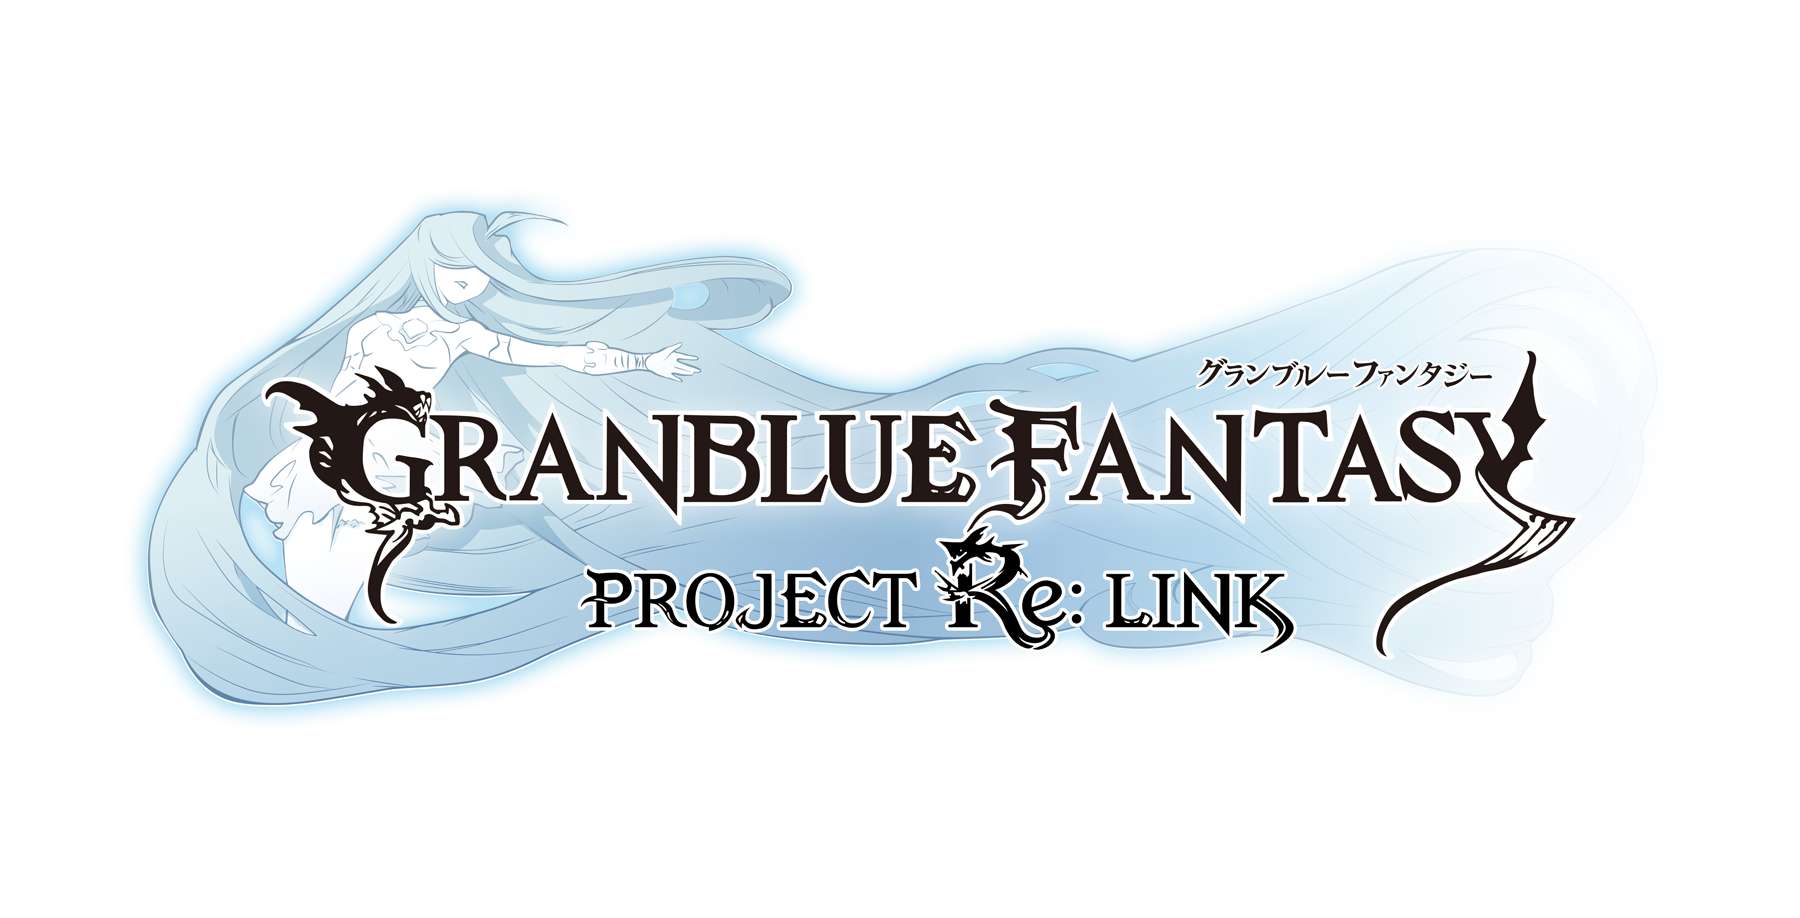 Granblue Fantasy Re: Link habla sobre la falta de información de su desarrollo